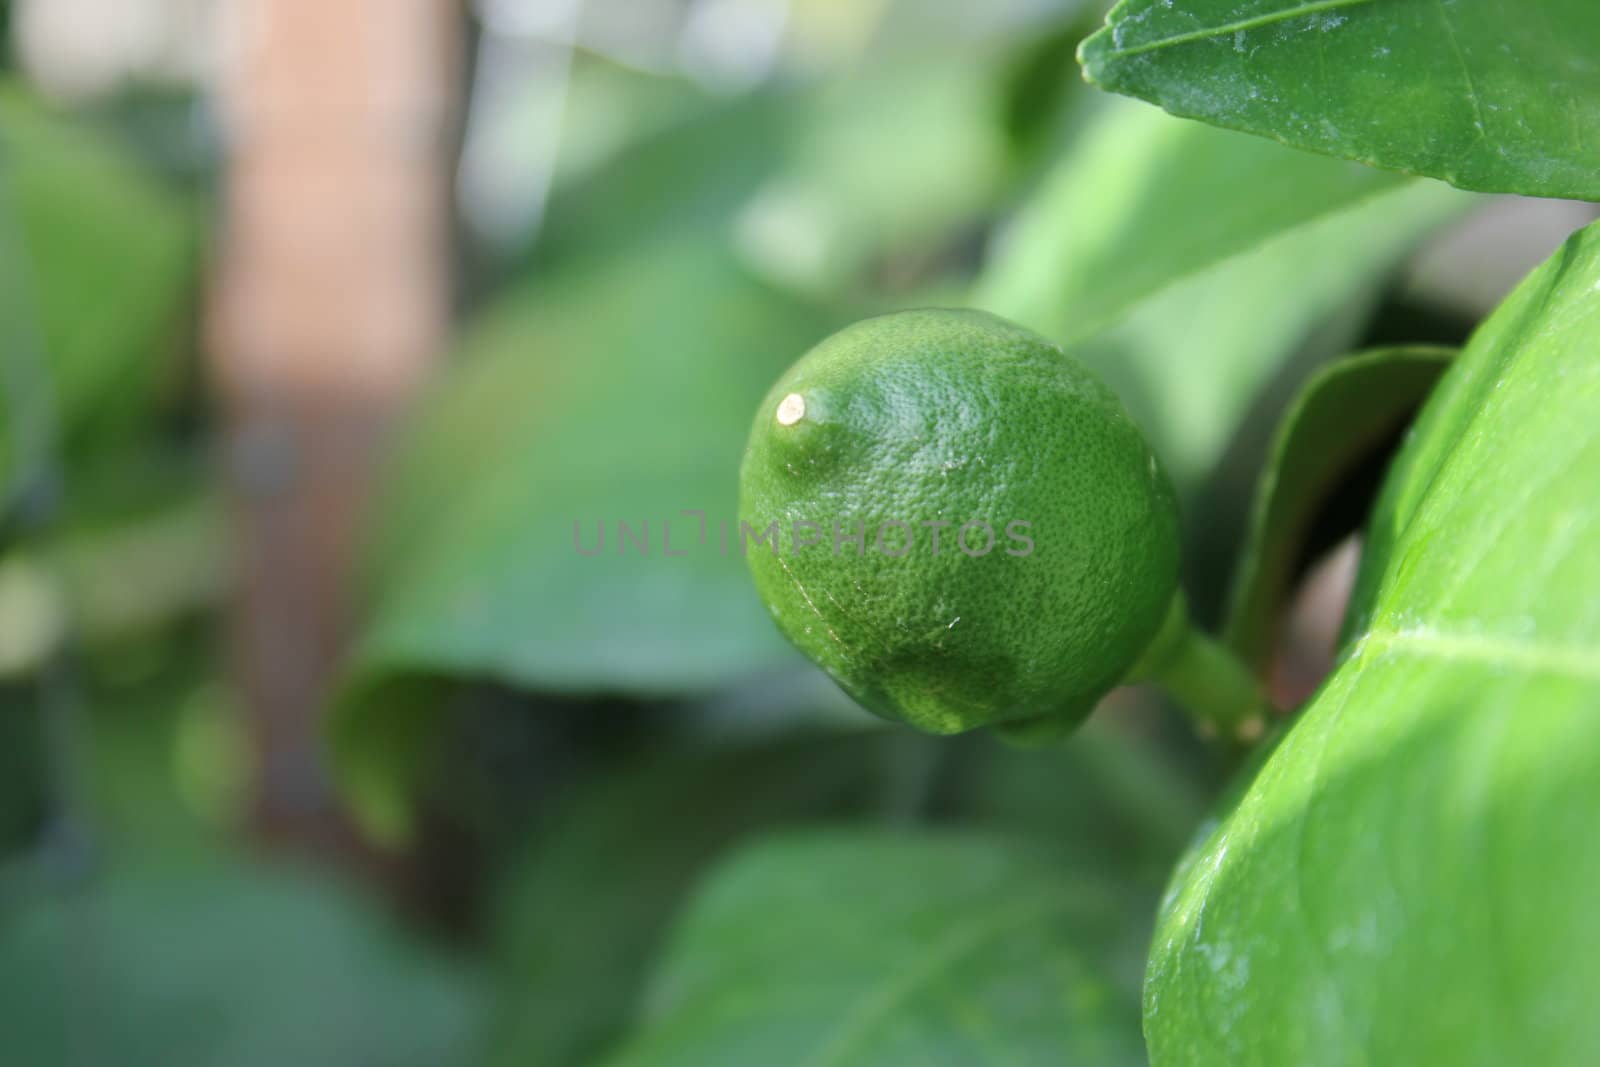 Green Lemon Growing by abhbah05